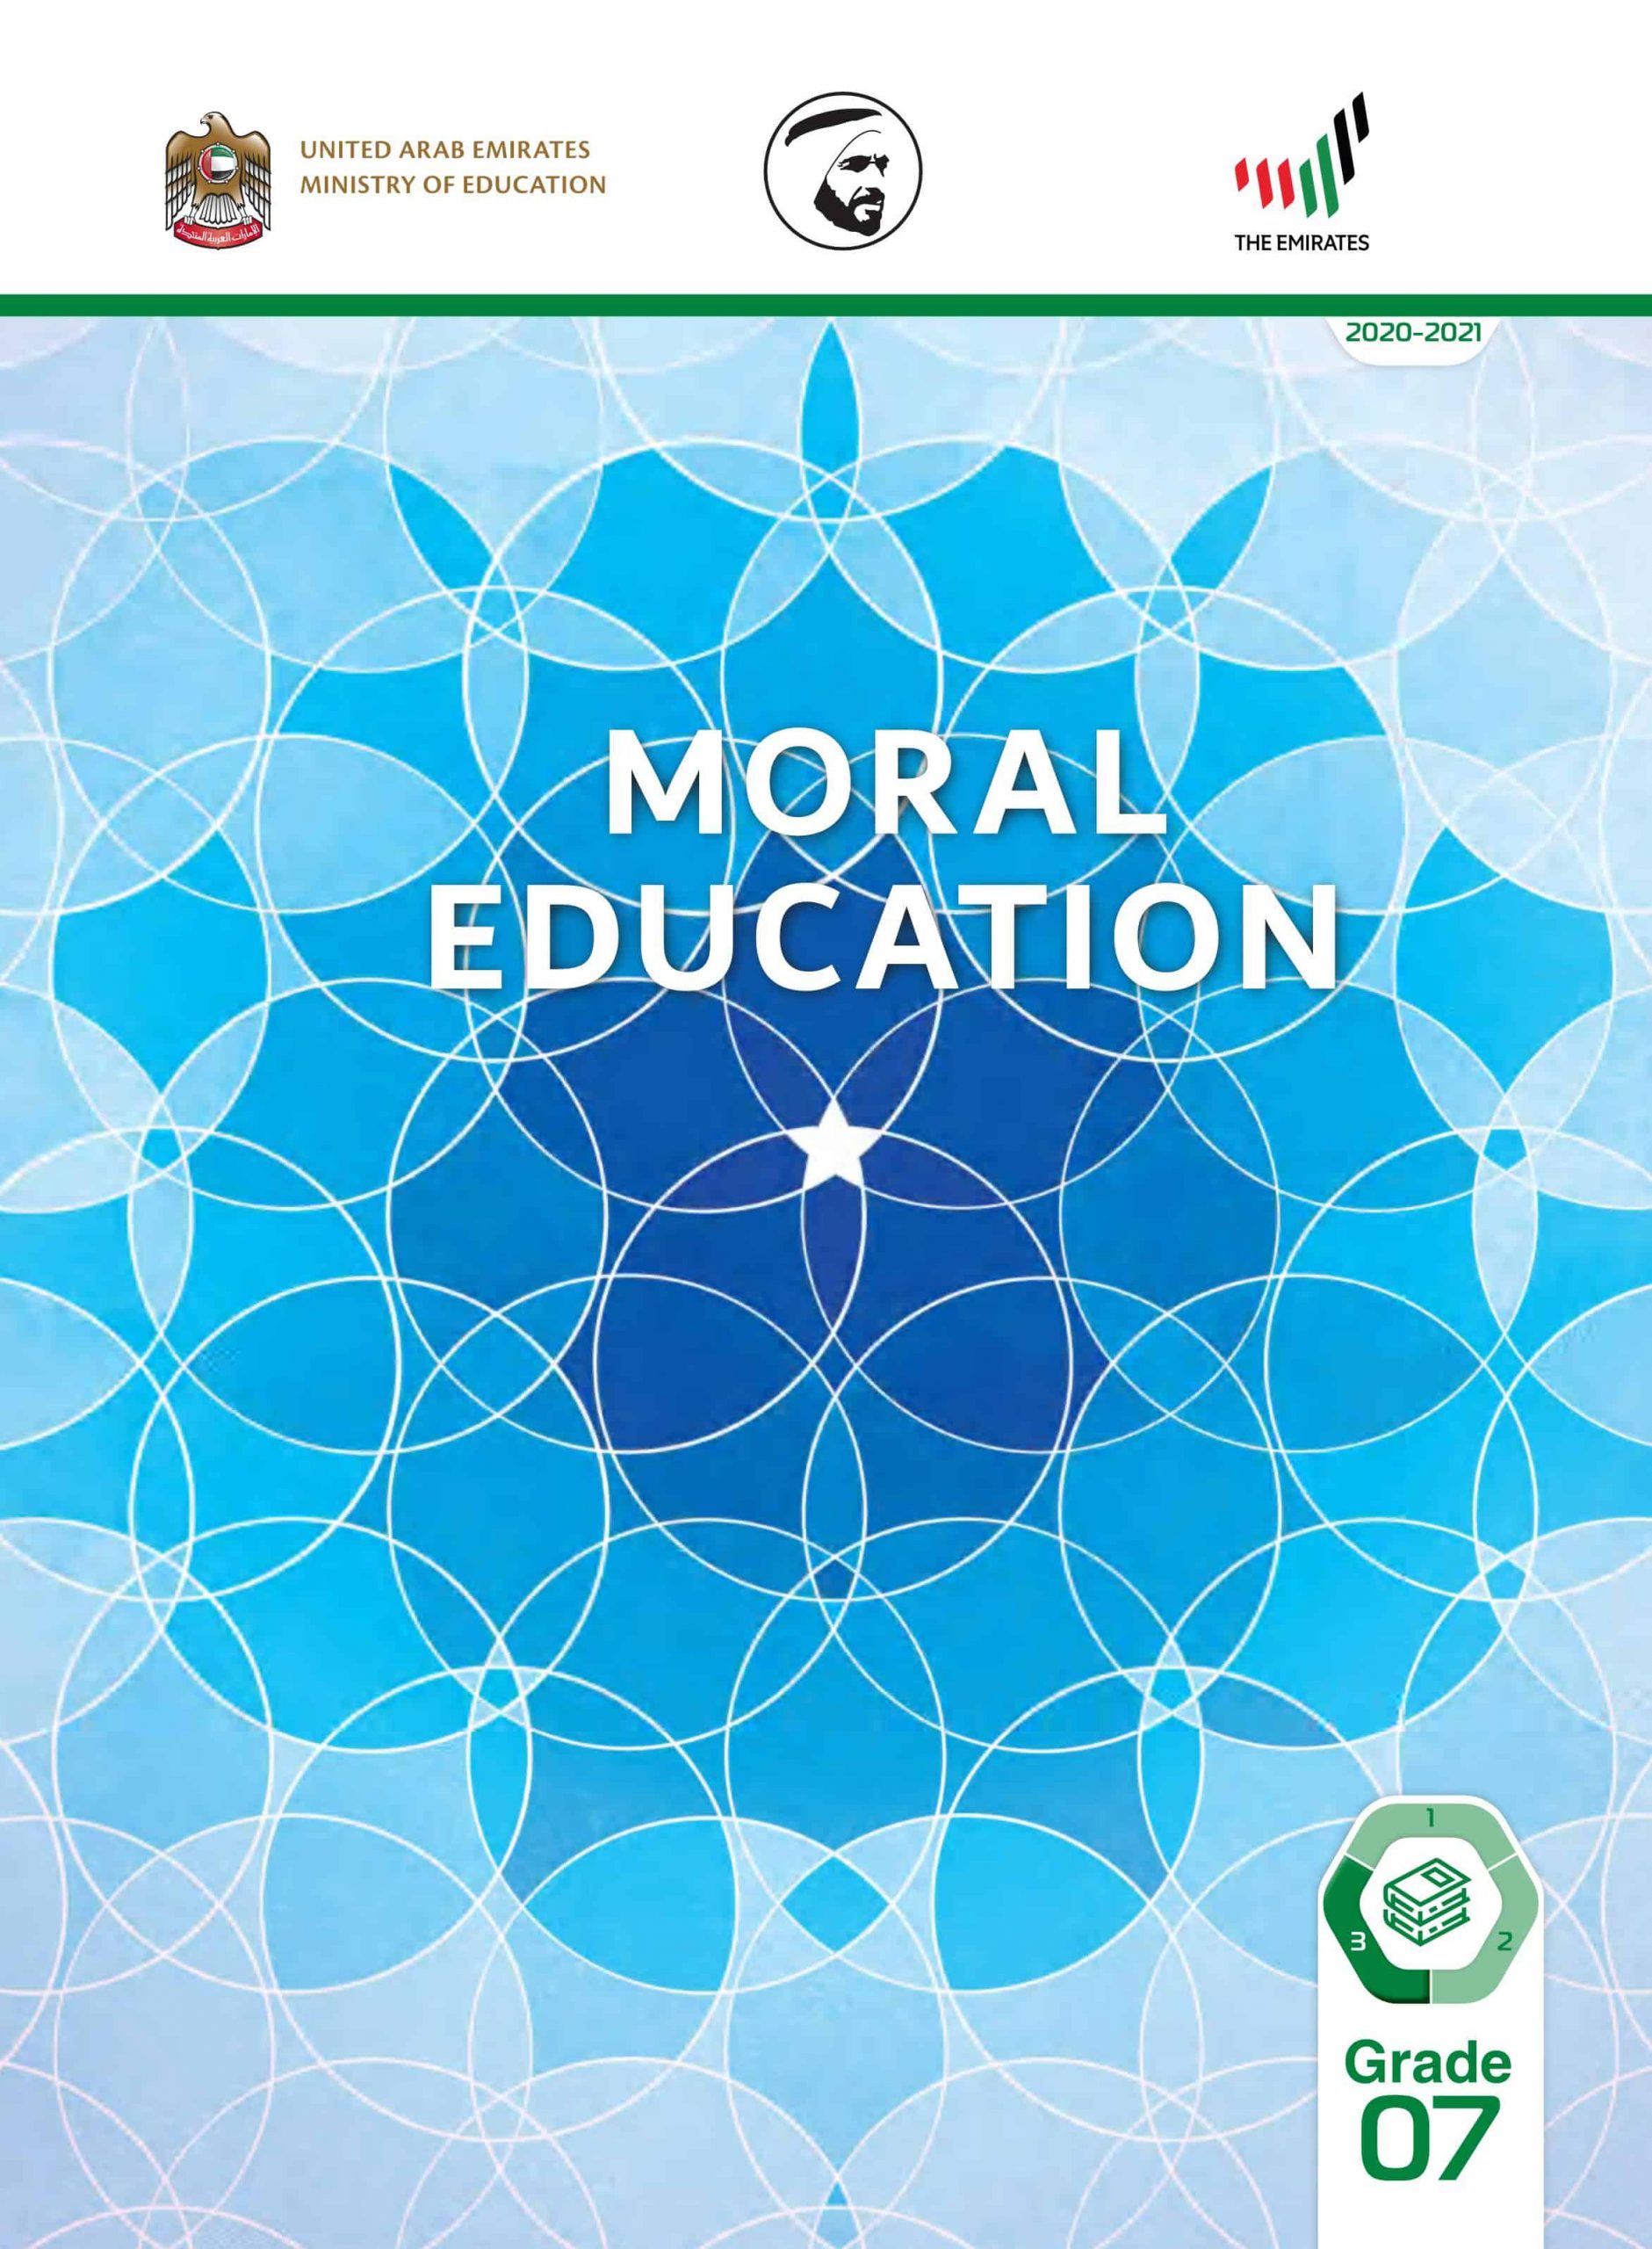 كتاب الطالب بالإنجليزي الفصل الدراسي الثالث 2020-2021 الصف السابع مادة التربية الأخلاقية